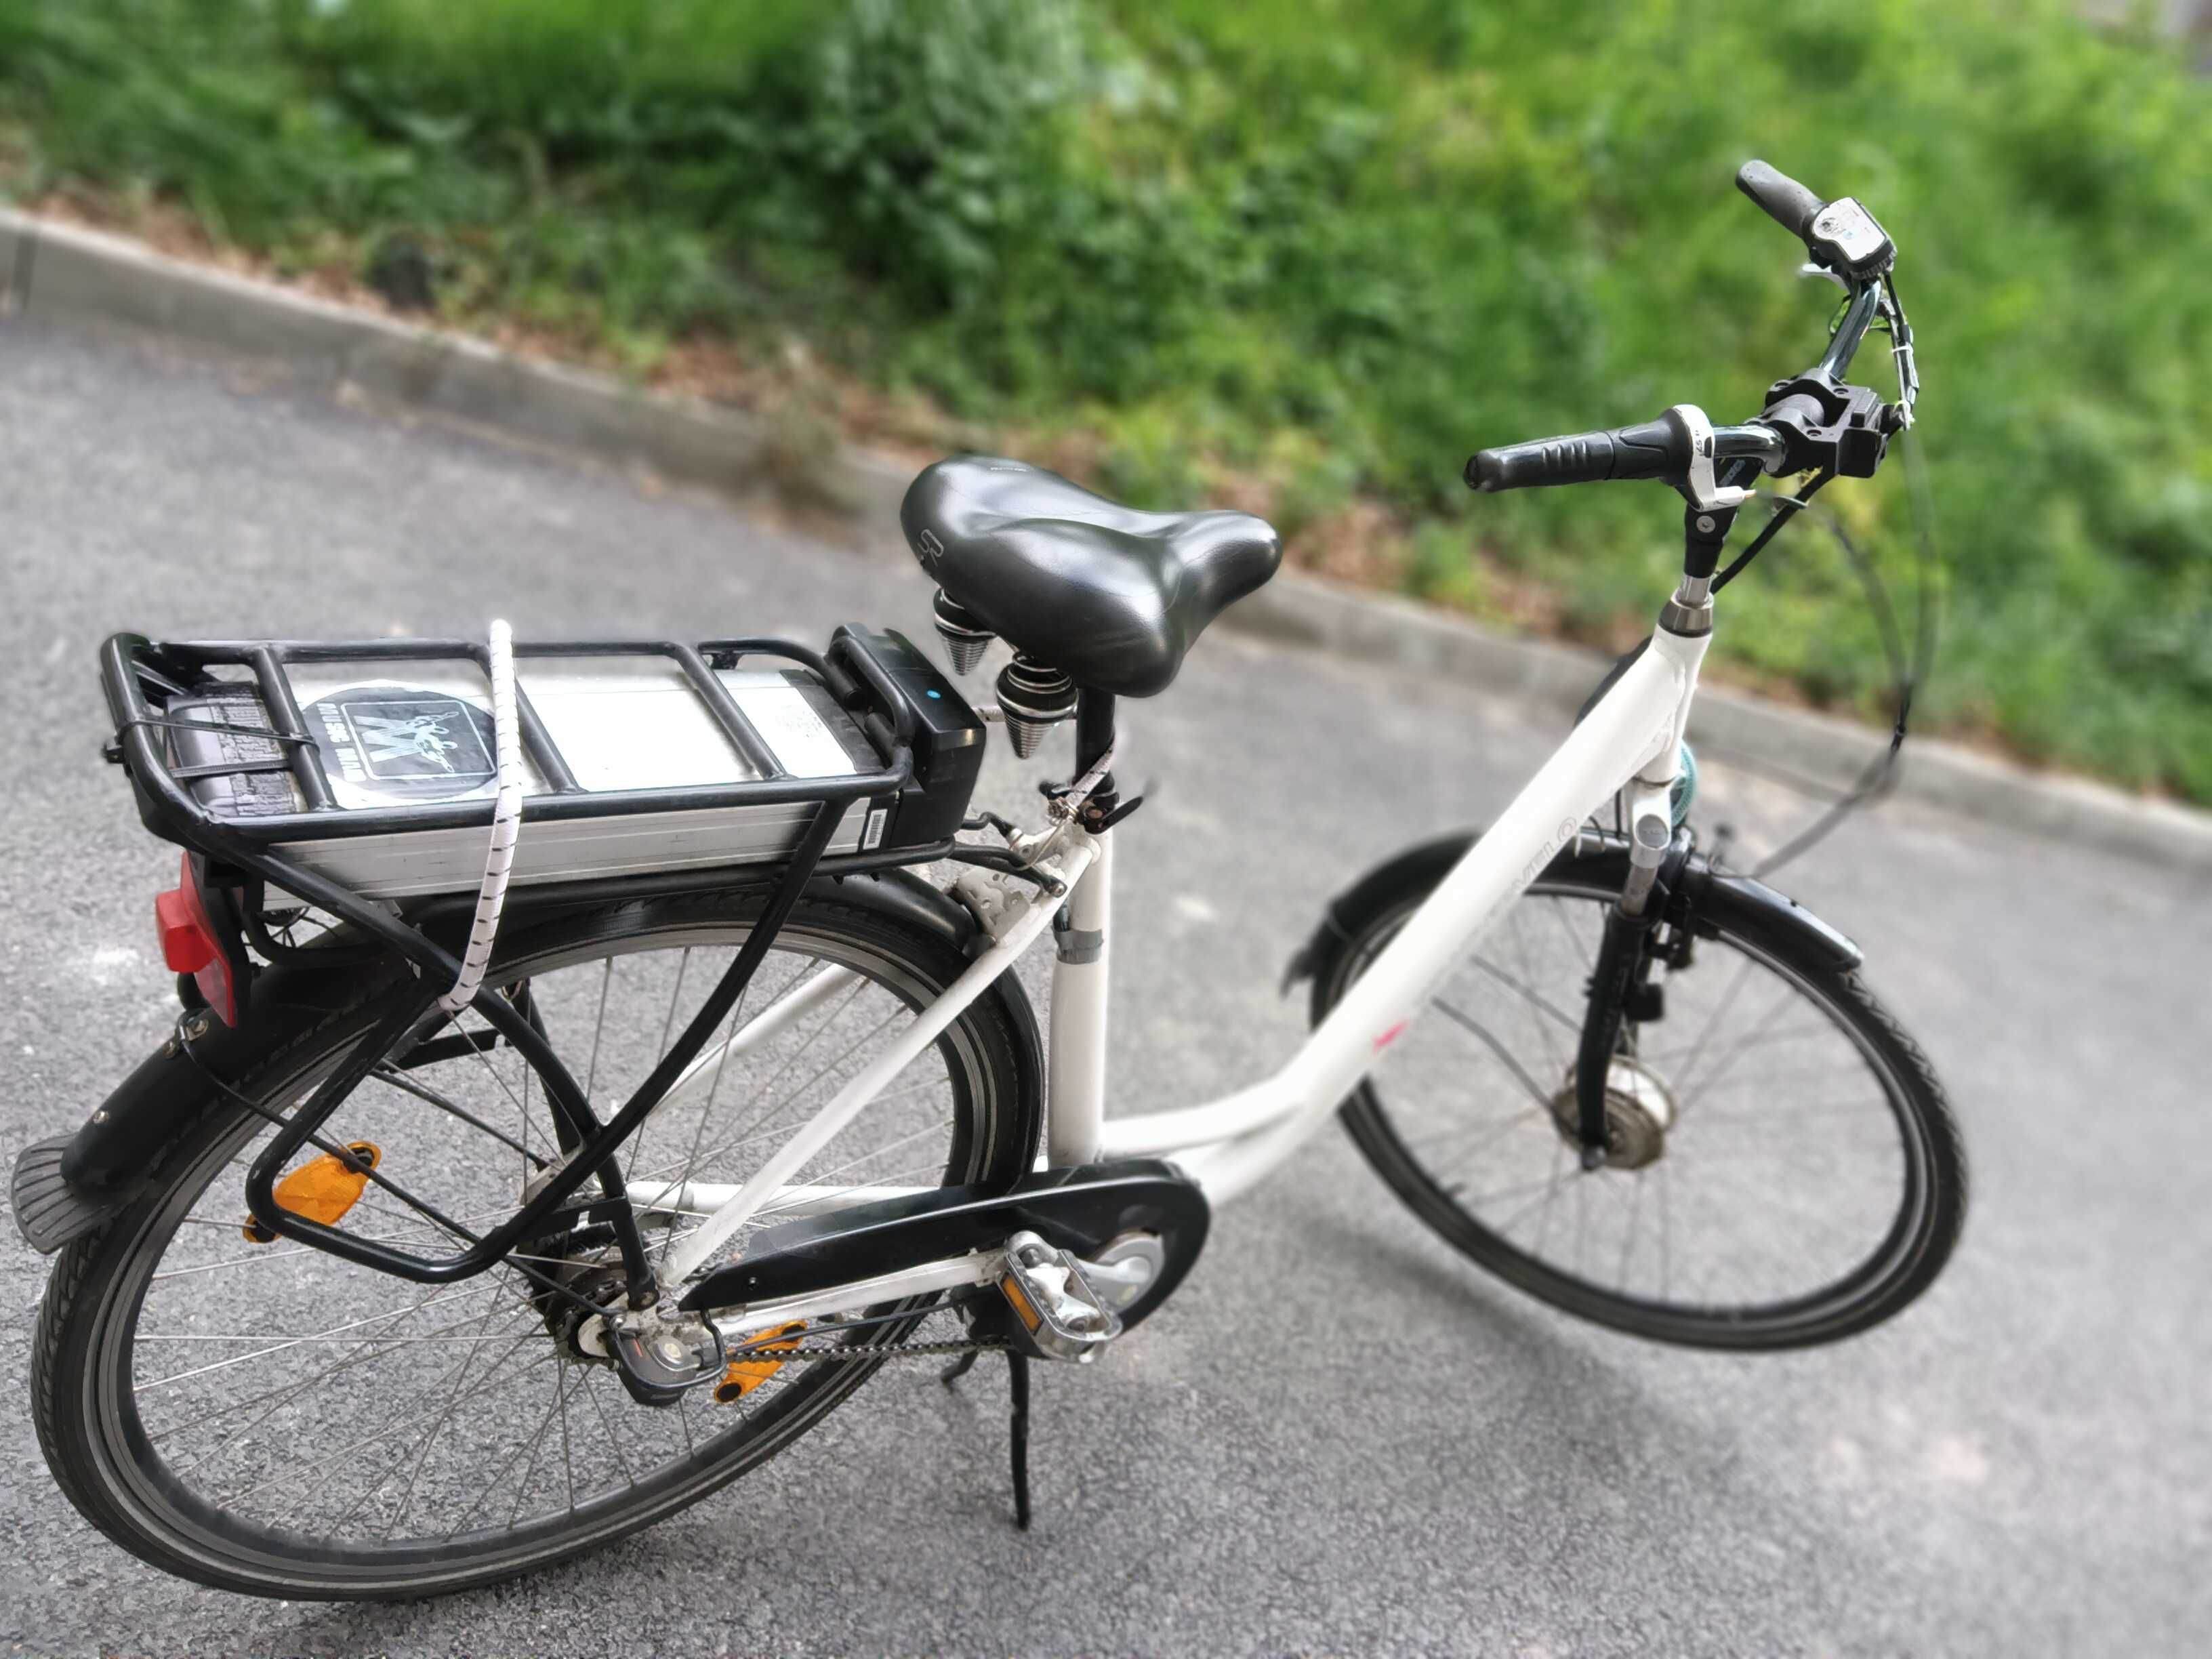 Електрически велосипед, колело,удобно, полезно за работа, пазар, спорт